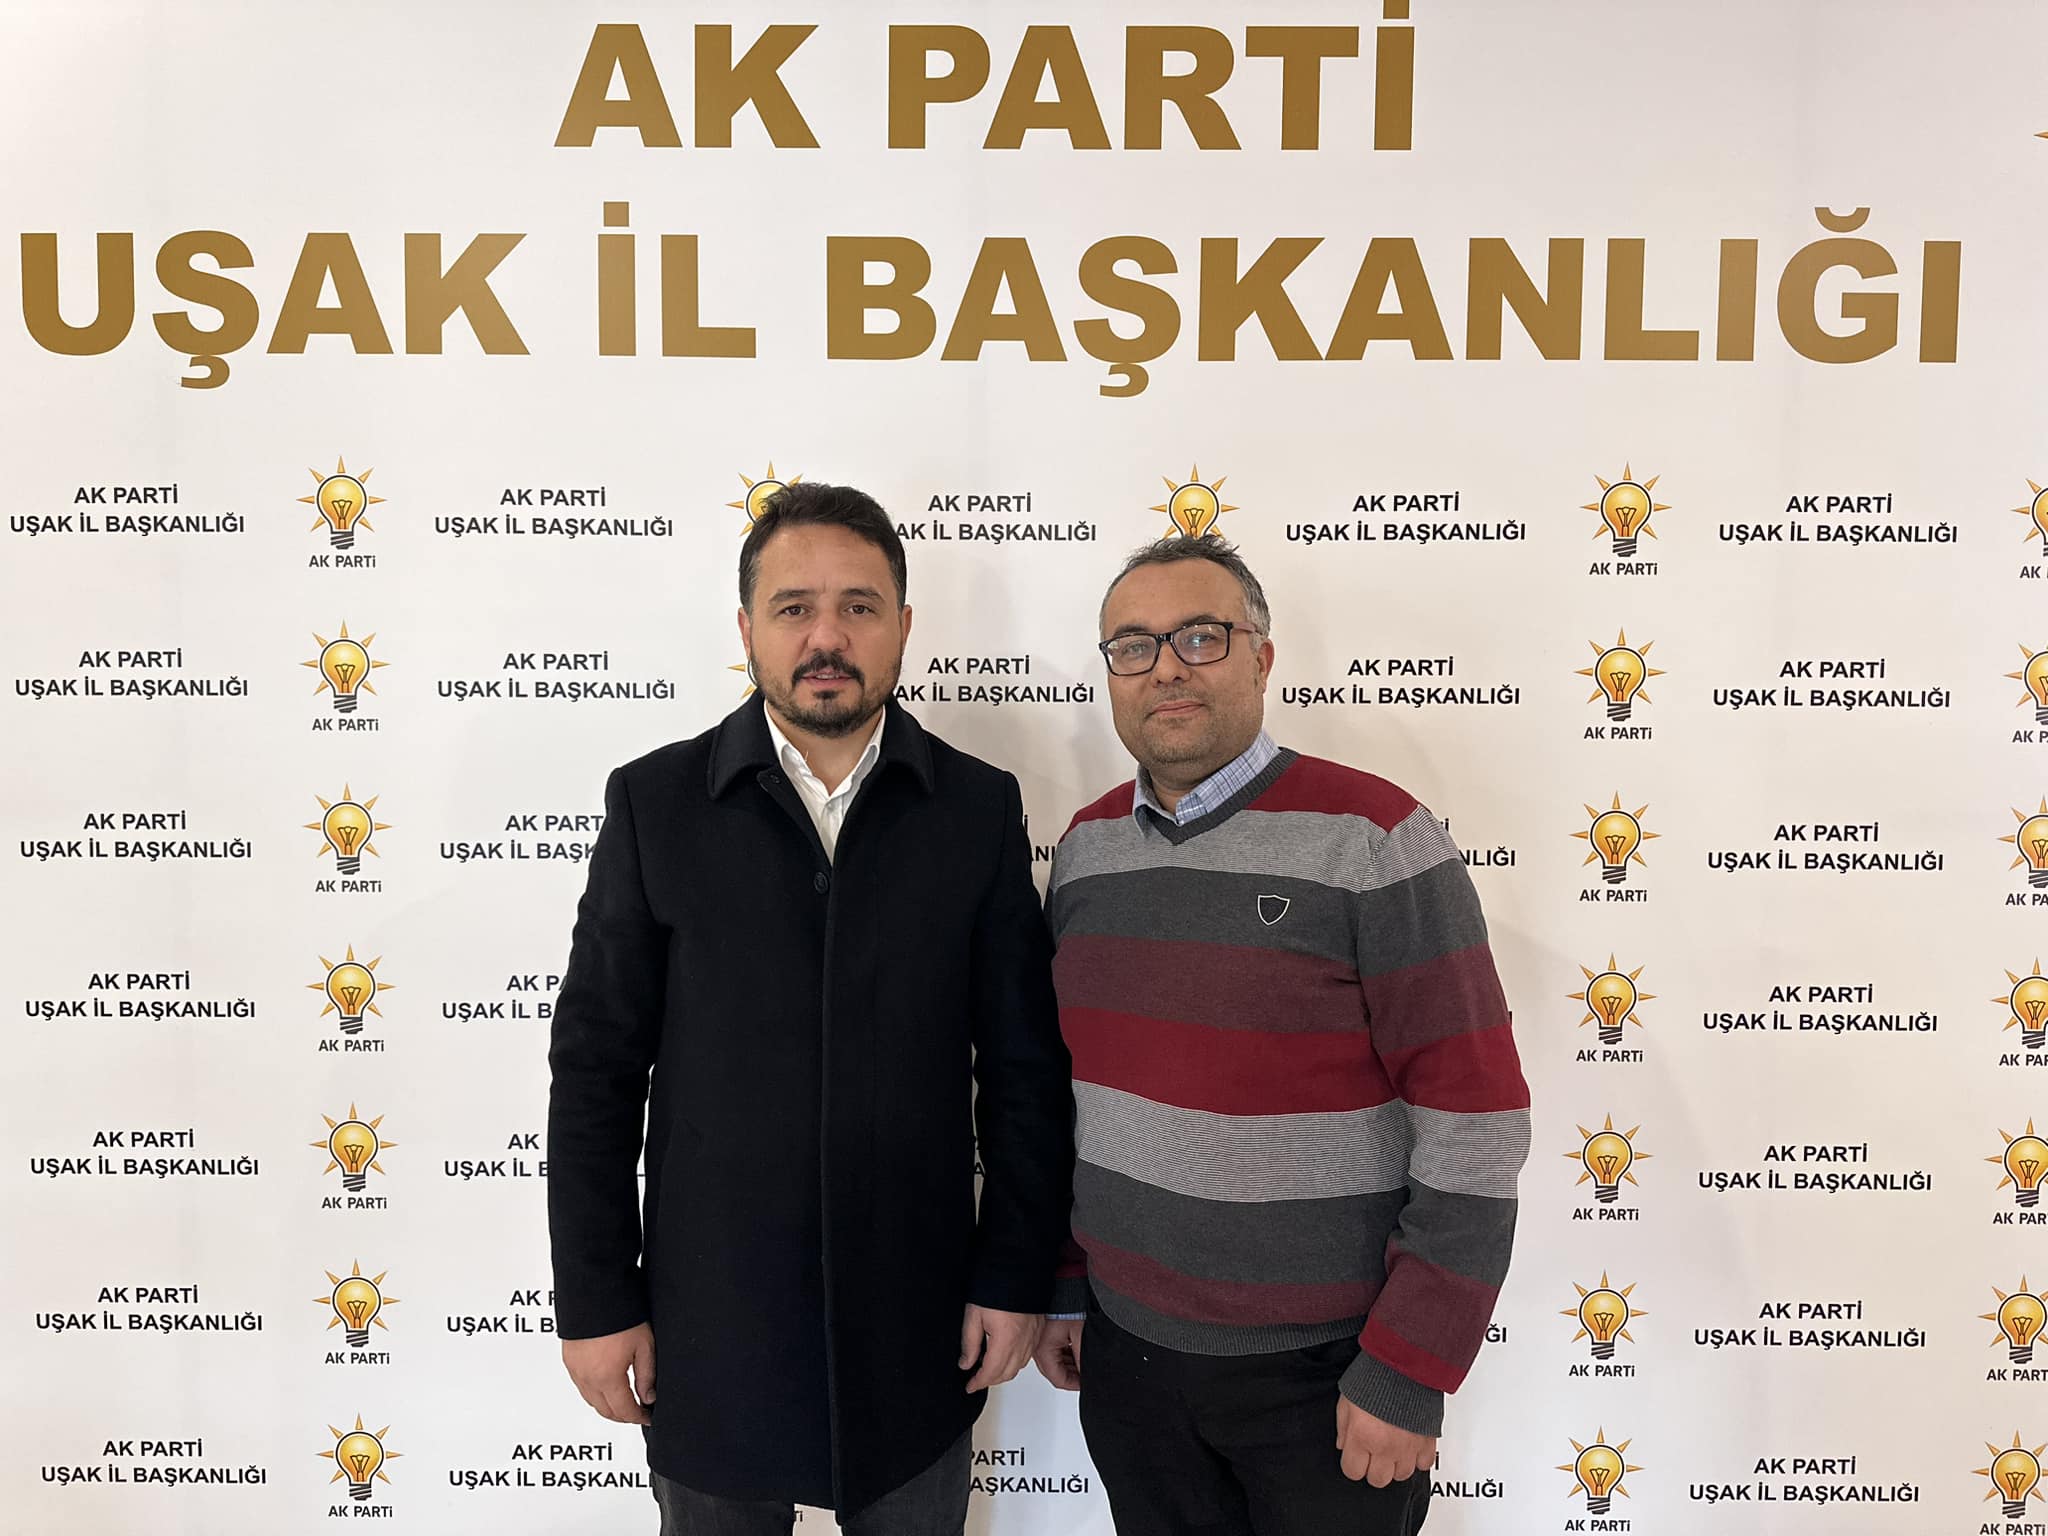 “Kartal Şahin, AK Parti’den Uşak Belediye Meclisi İçin Aday Adayı